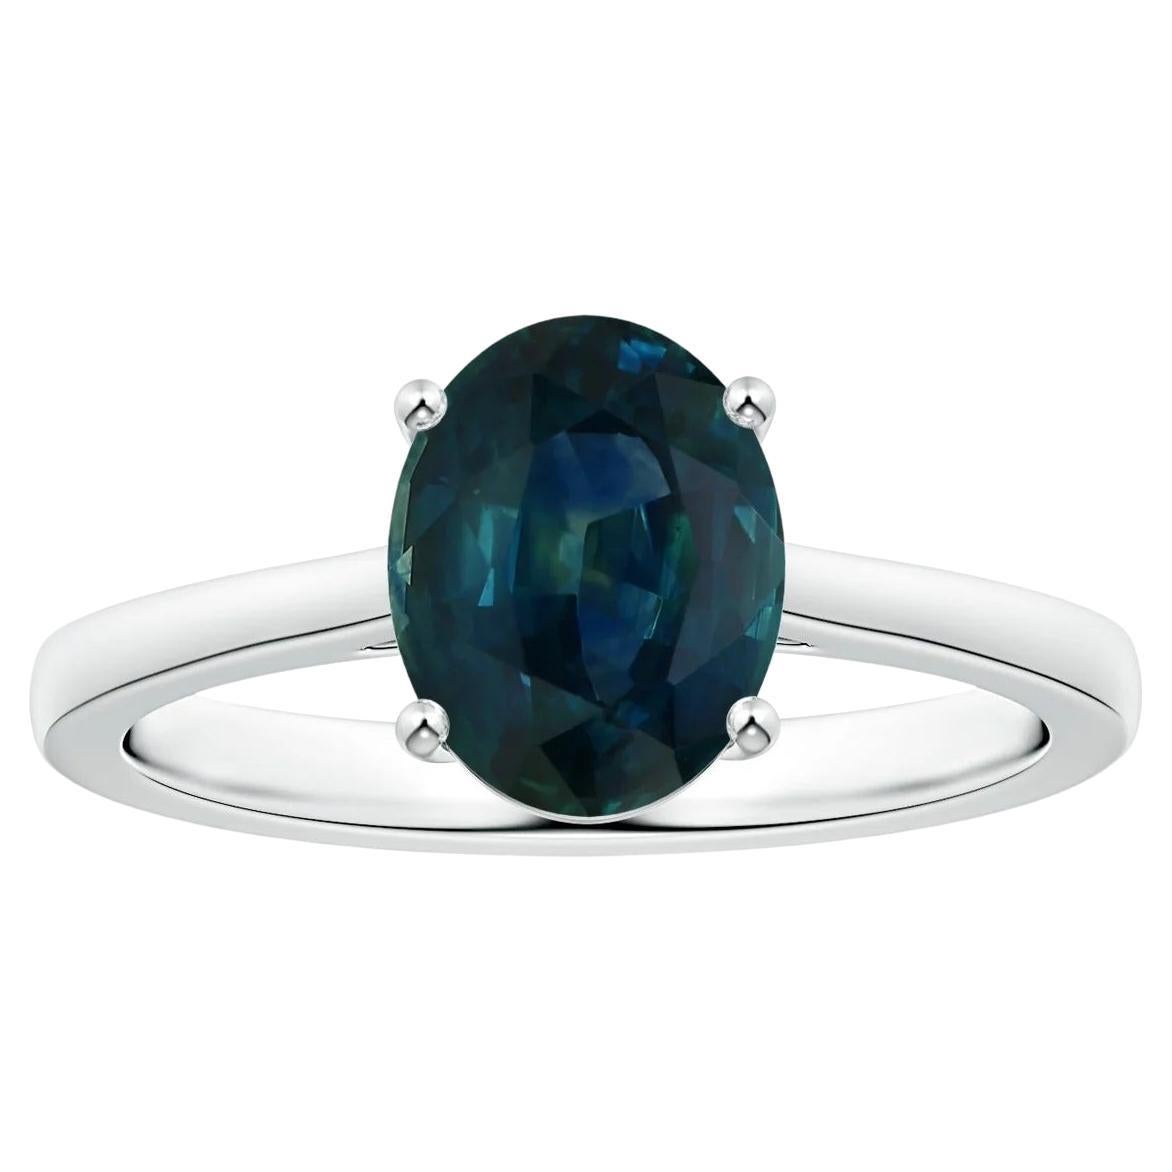 ANGARA GIA zertifizierter blauer Saphir-Ring aus Platin mit umgekehrtem, konisch zulaufendem Schaft